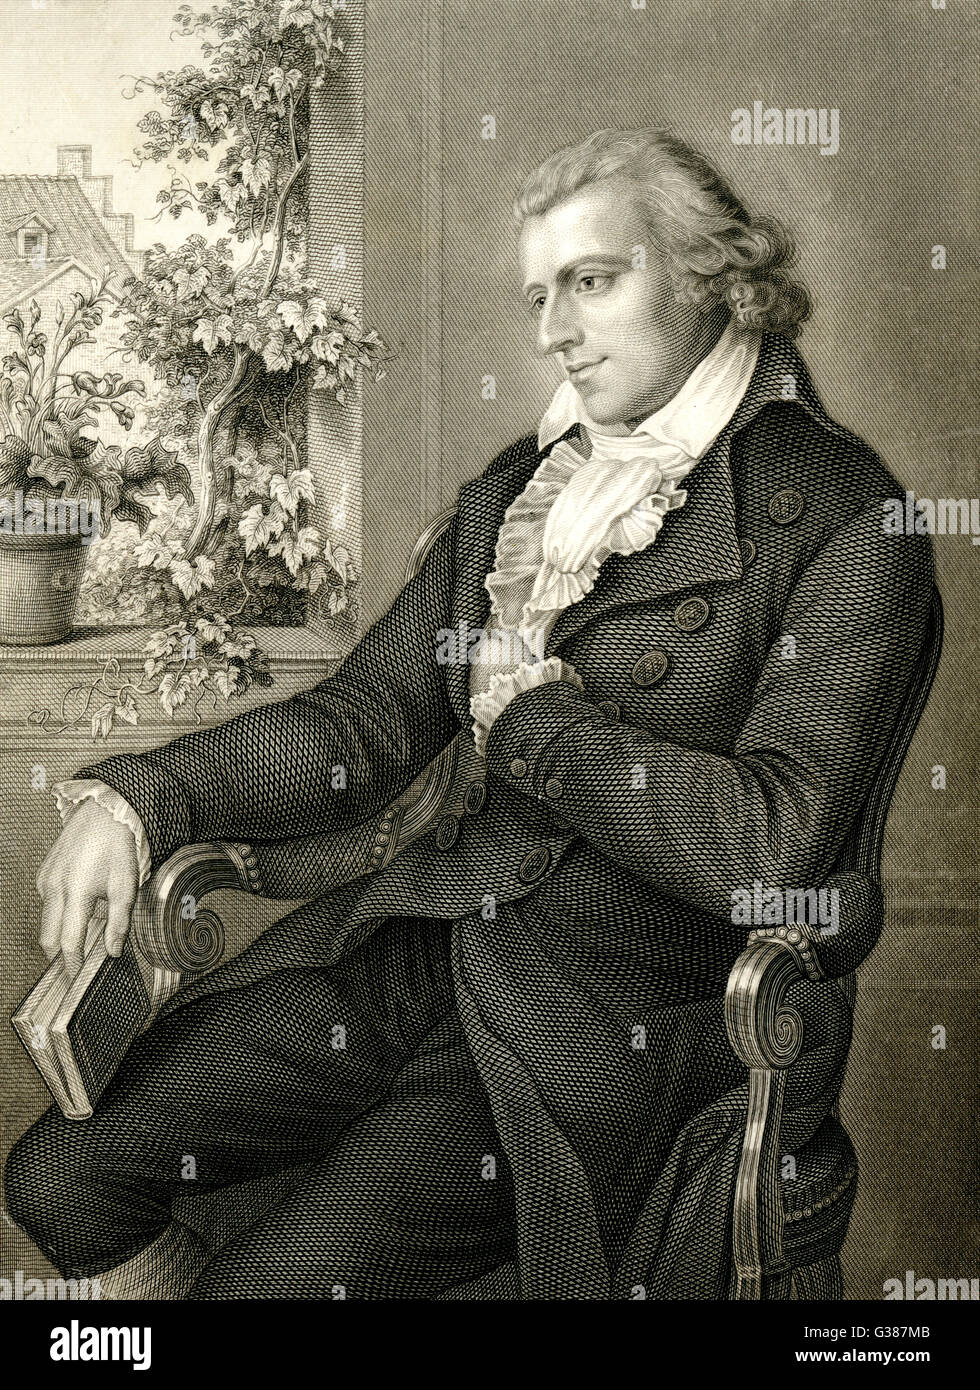 JOHANN CHRISTOPH FRIEDRICH SCHILLER  German writer        Date: 1759 - 1805 Stock Photo